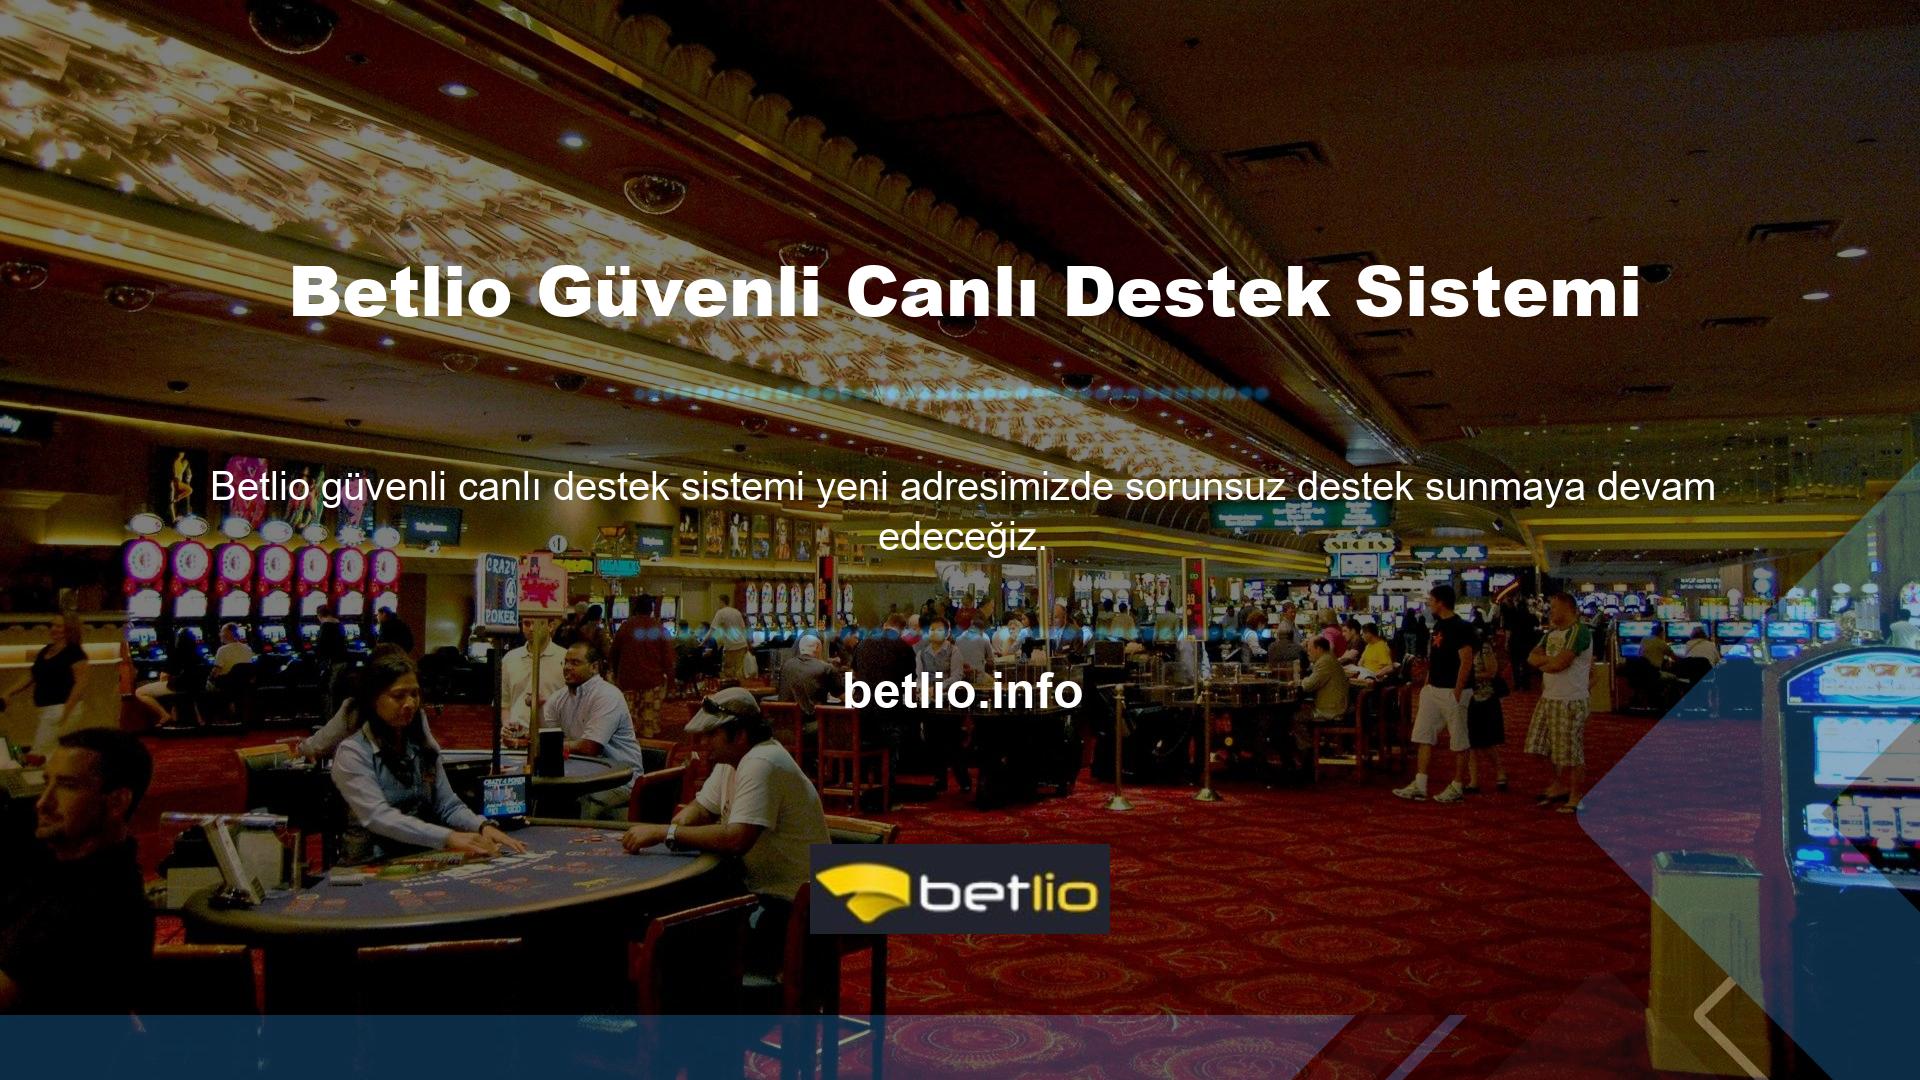 Çevrimiçi destek: Betlio web sitesi 7/24 güvenli destek sunmaktadır Destek e-posta yoluyla da verilebilir